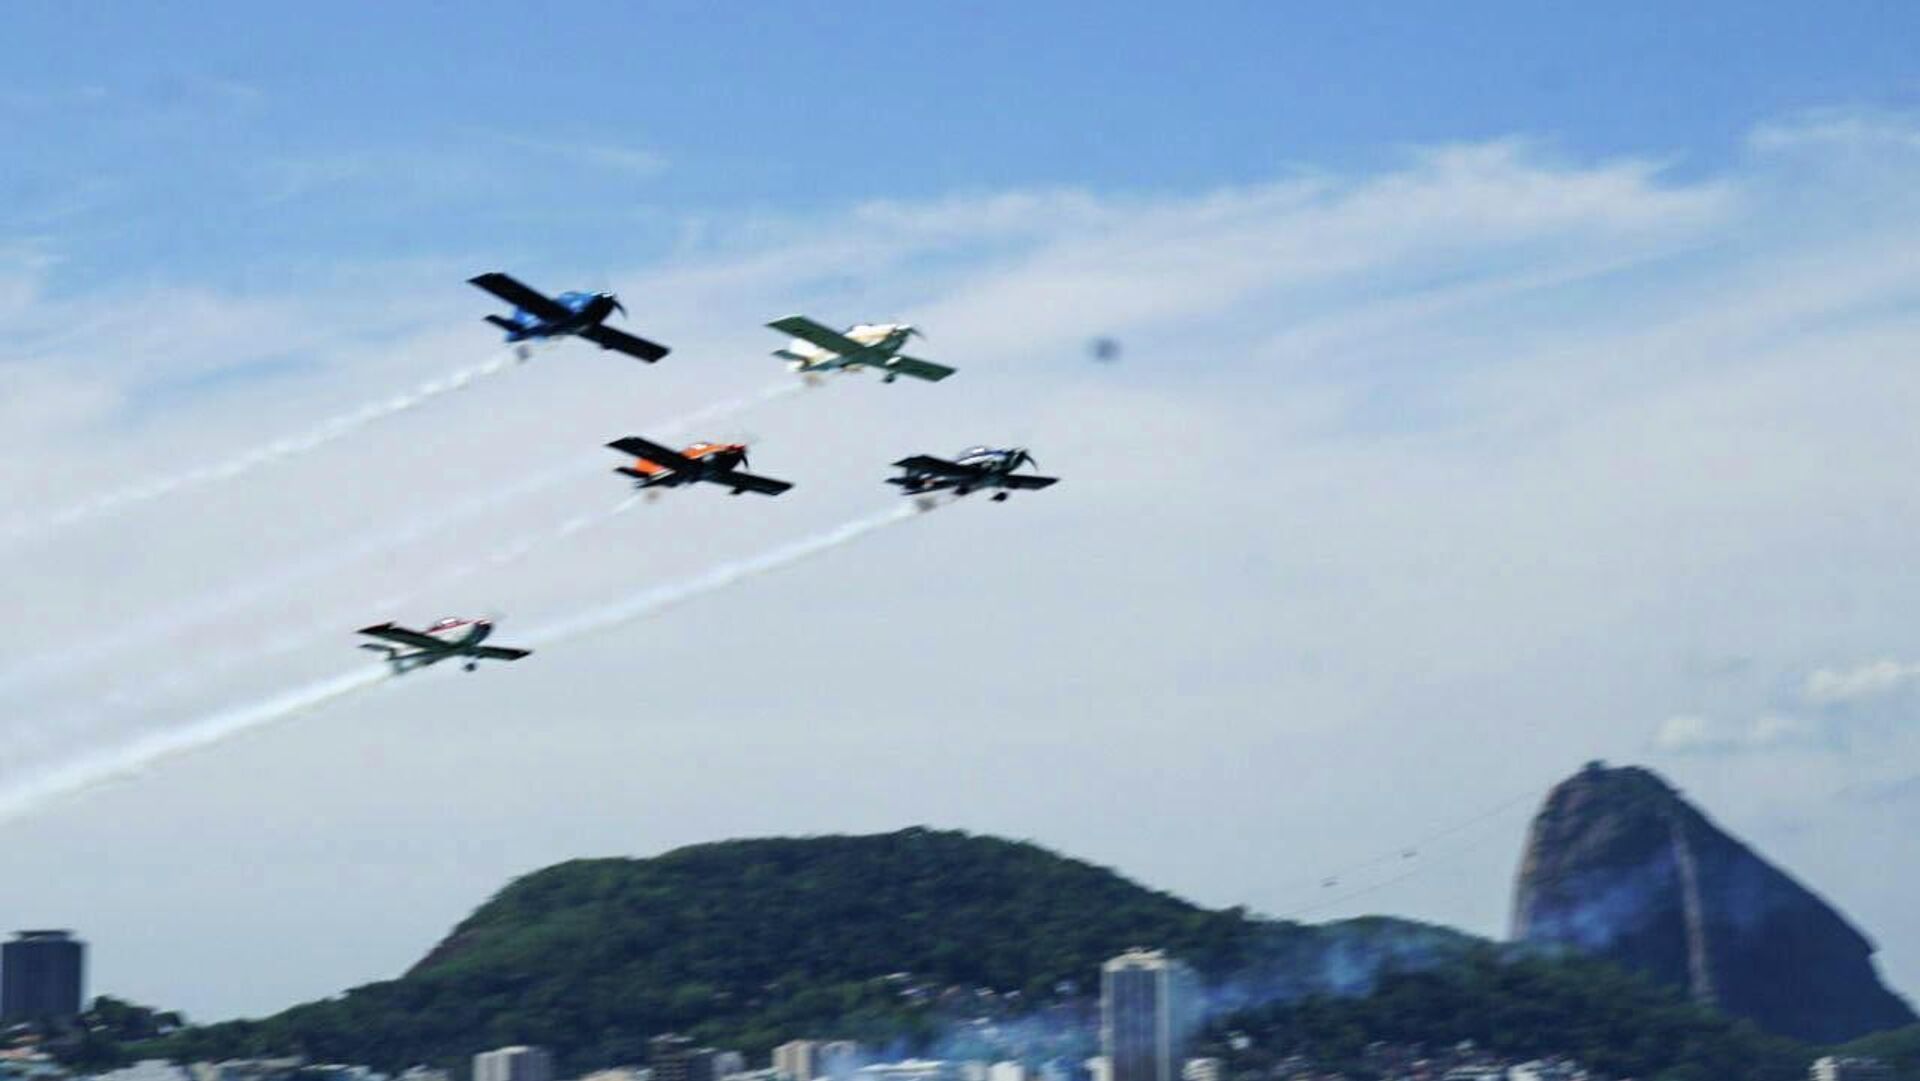 Aeronaves realizam manobras durante evento militar em comemoração ao Bicentenário da Independência do Brasil, em Copacabana, no Rio de Janeiro, em 7 de setembro de 2022 - Sputnik Brasil, 1920, 07.09.2022